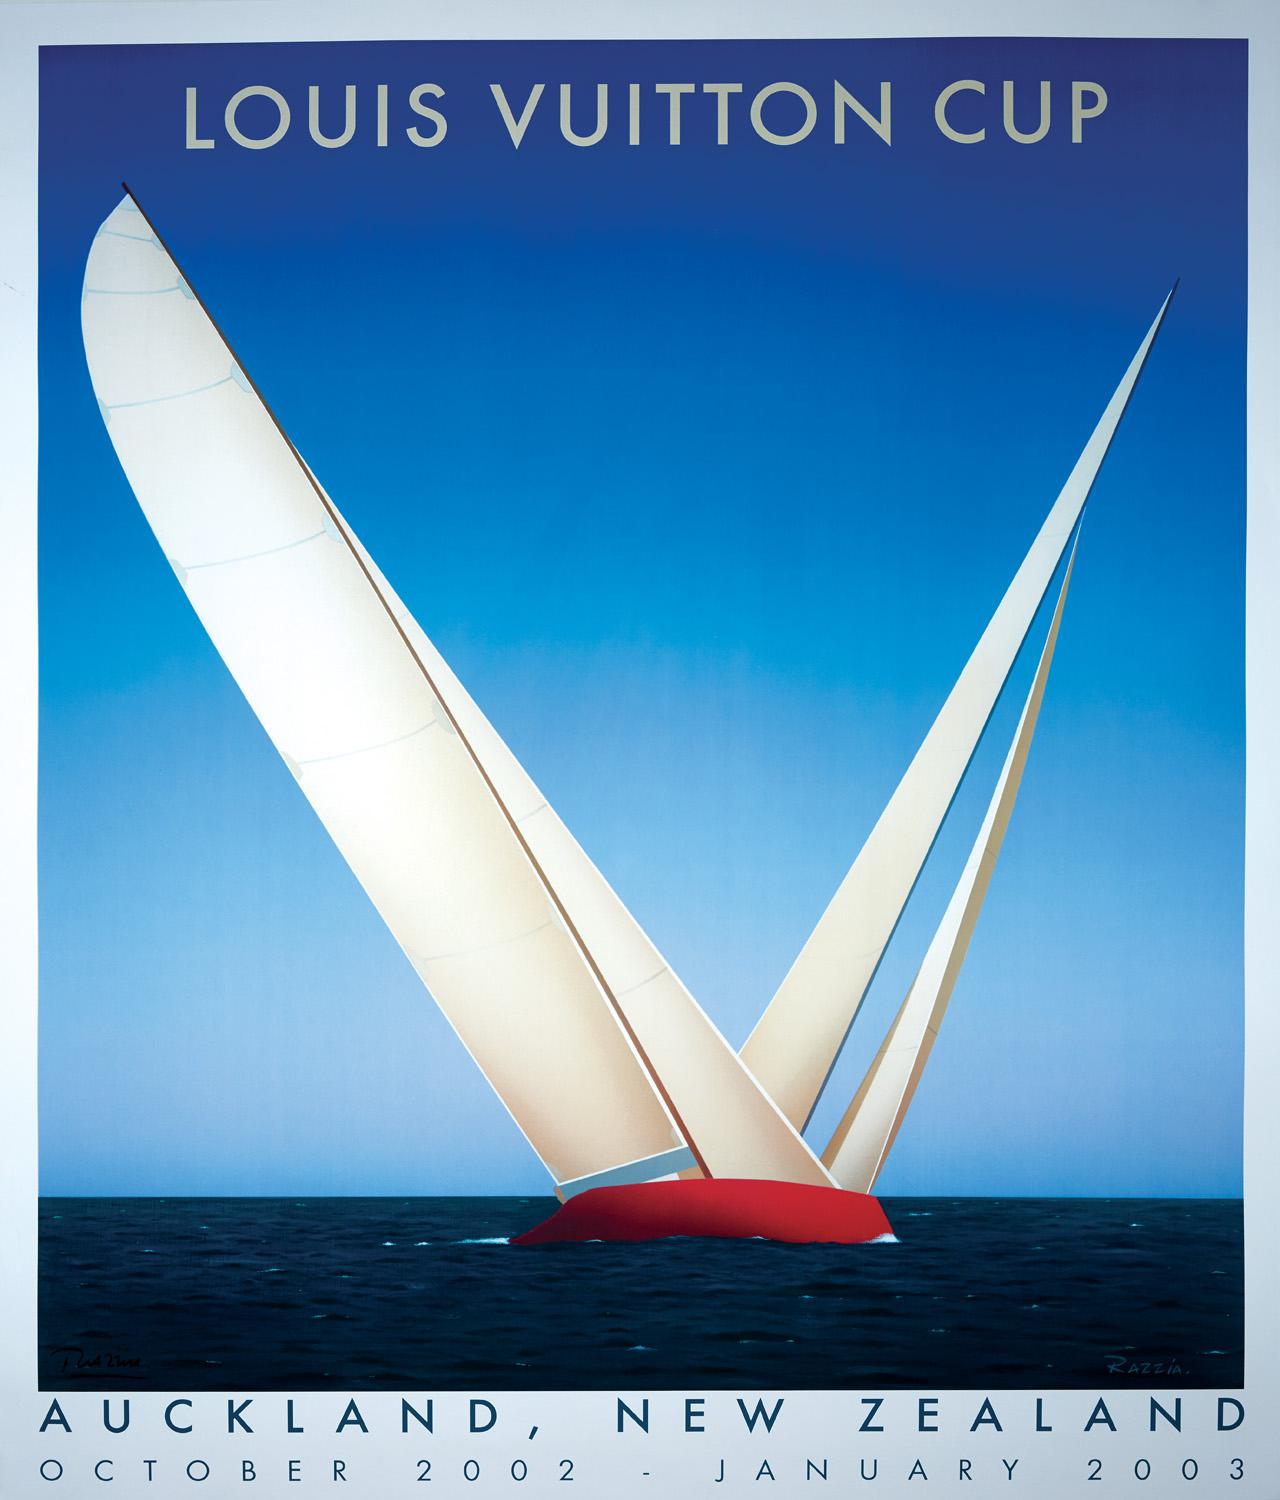 Louis Vuitton Trophy - Auckland, New Zealand (medium format)